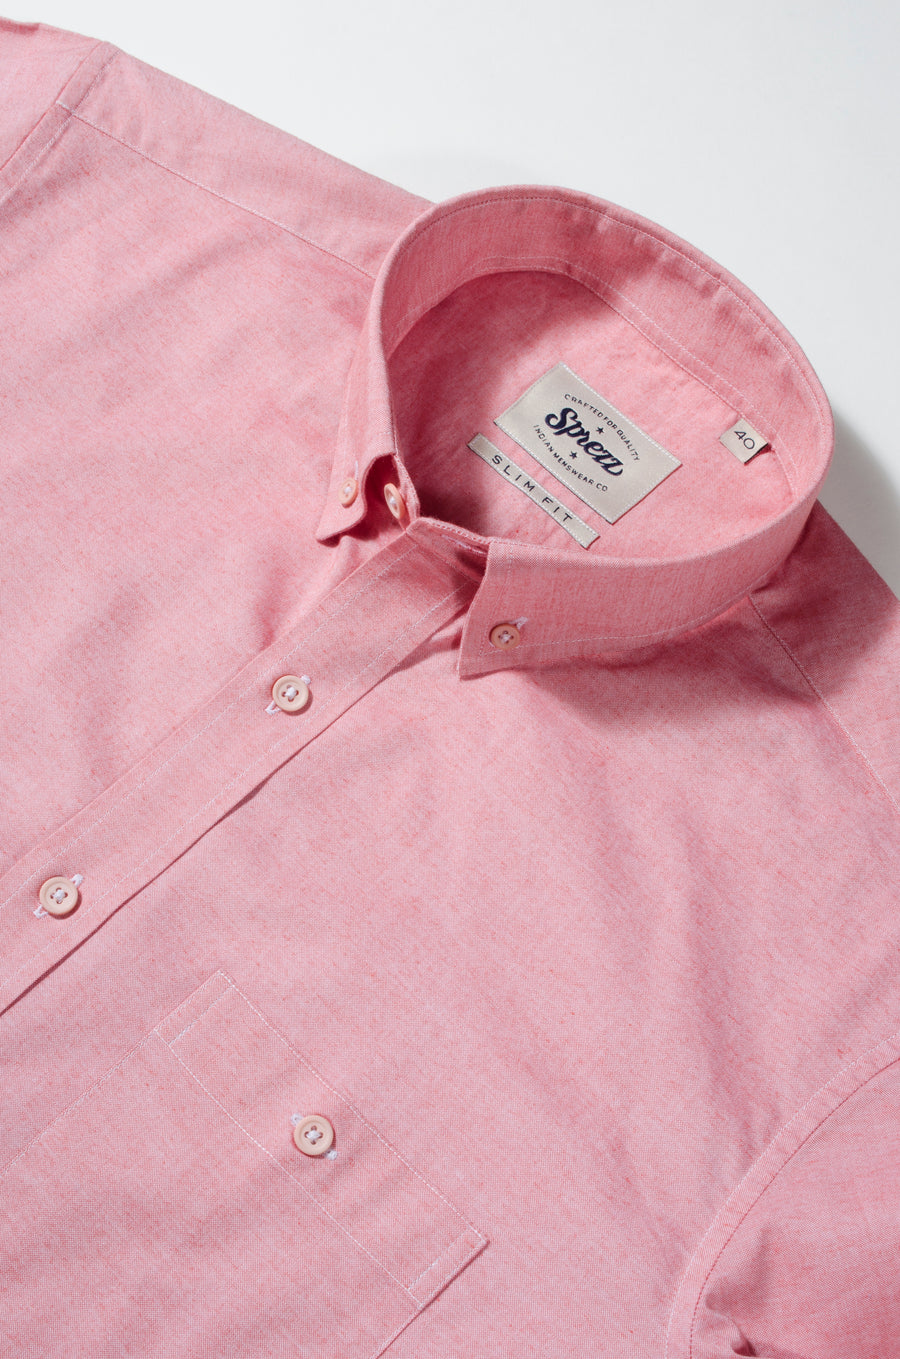 Salmon Pink Chambray Button Down Slim Fit Shirt